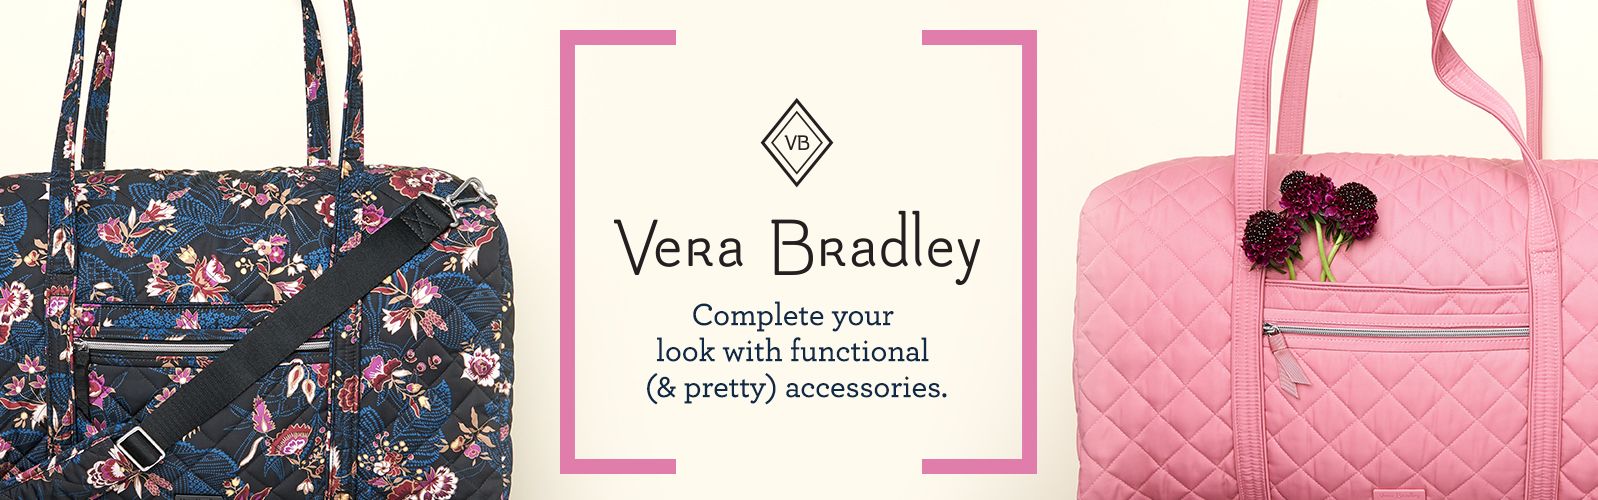 Like new Vera Bradley purse | Vera bradley purses, Purses, Vera bradley